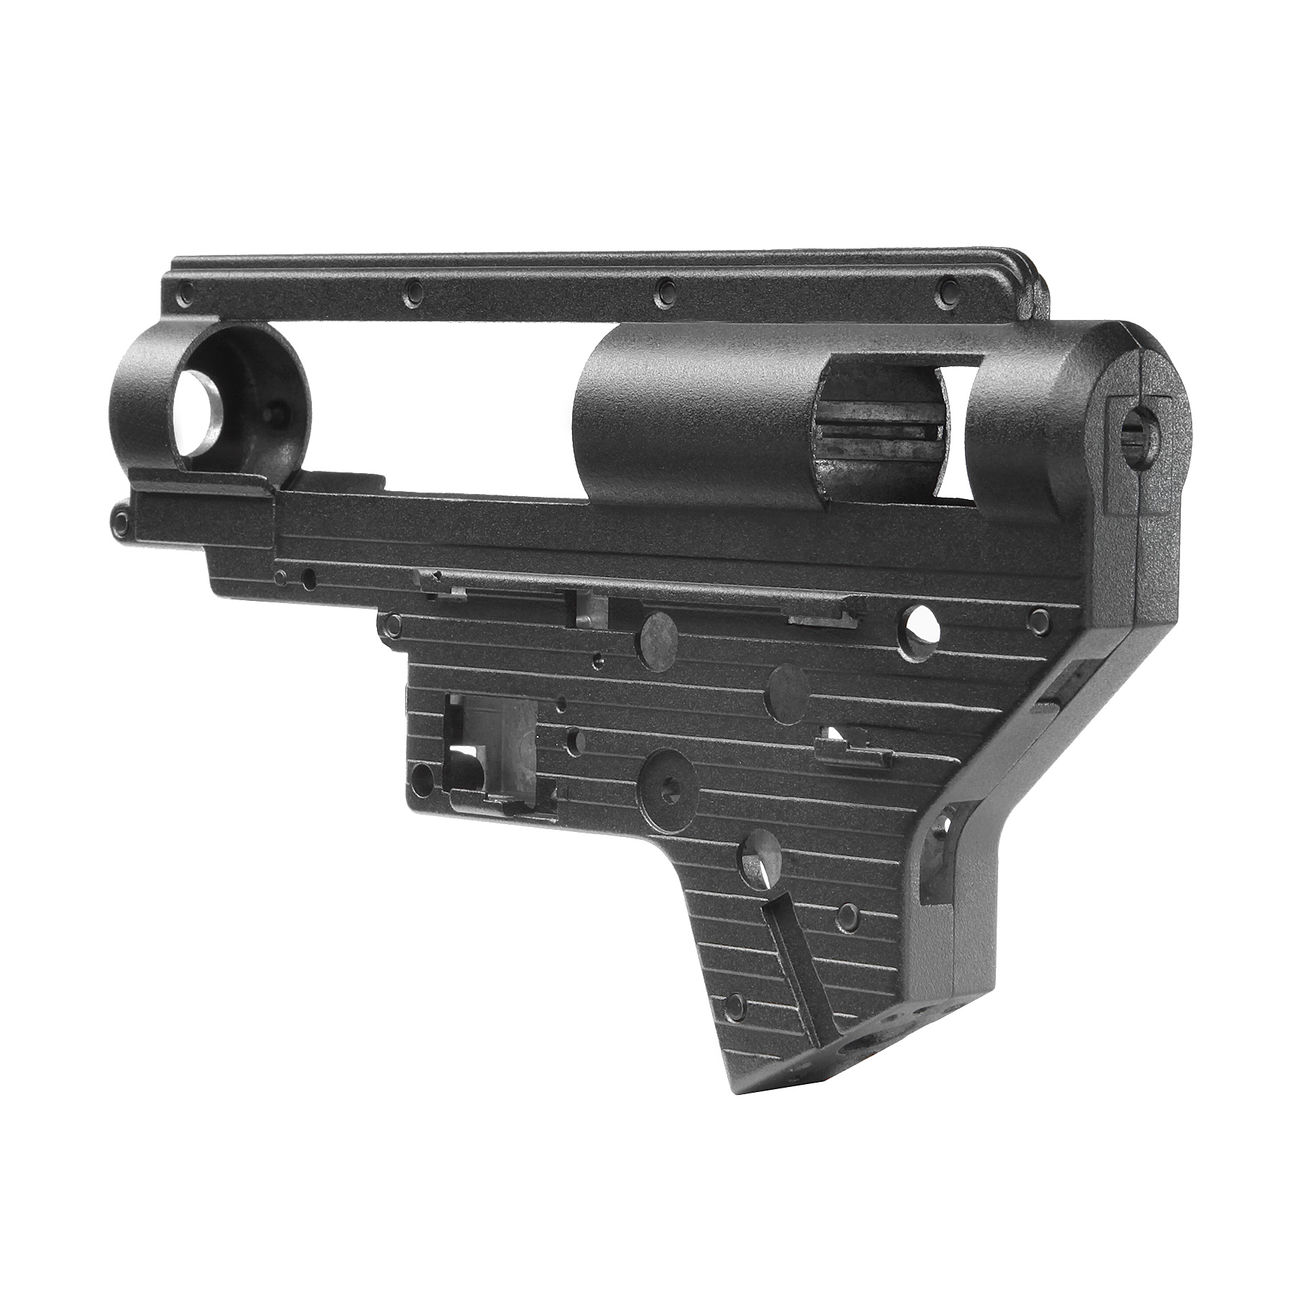 Modify 7mm Torus Aluminium Gearboxgehuse Version 2 inkl. Zubehr schwarz Bild 4